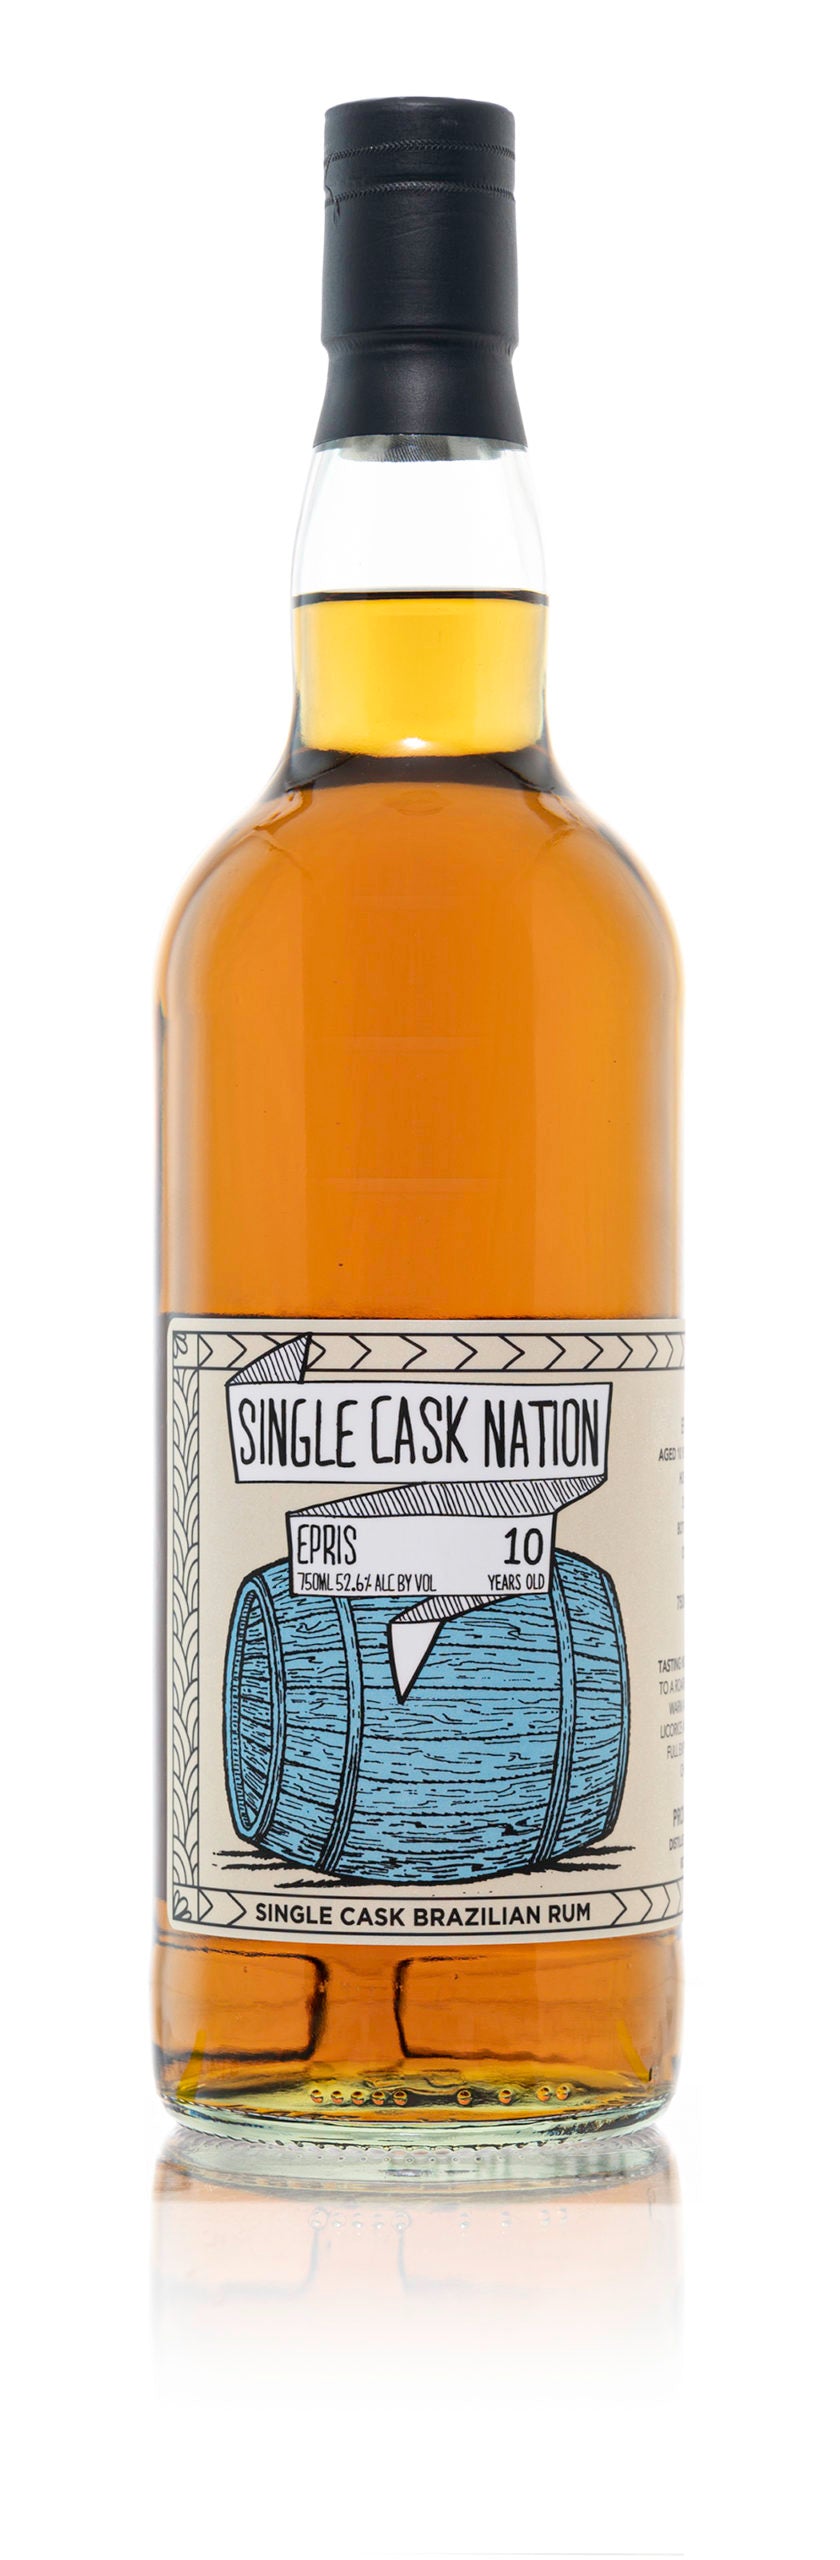 Single Cask Nation Epris Brazilian Rum Single Cask 10 Years Old (2011) 750ml